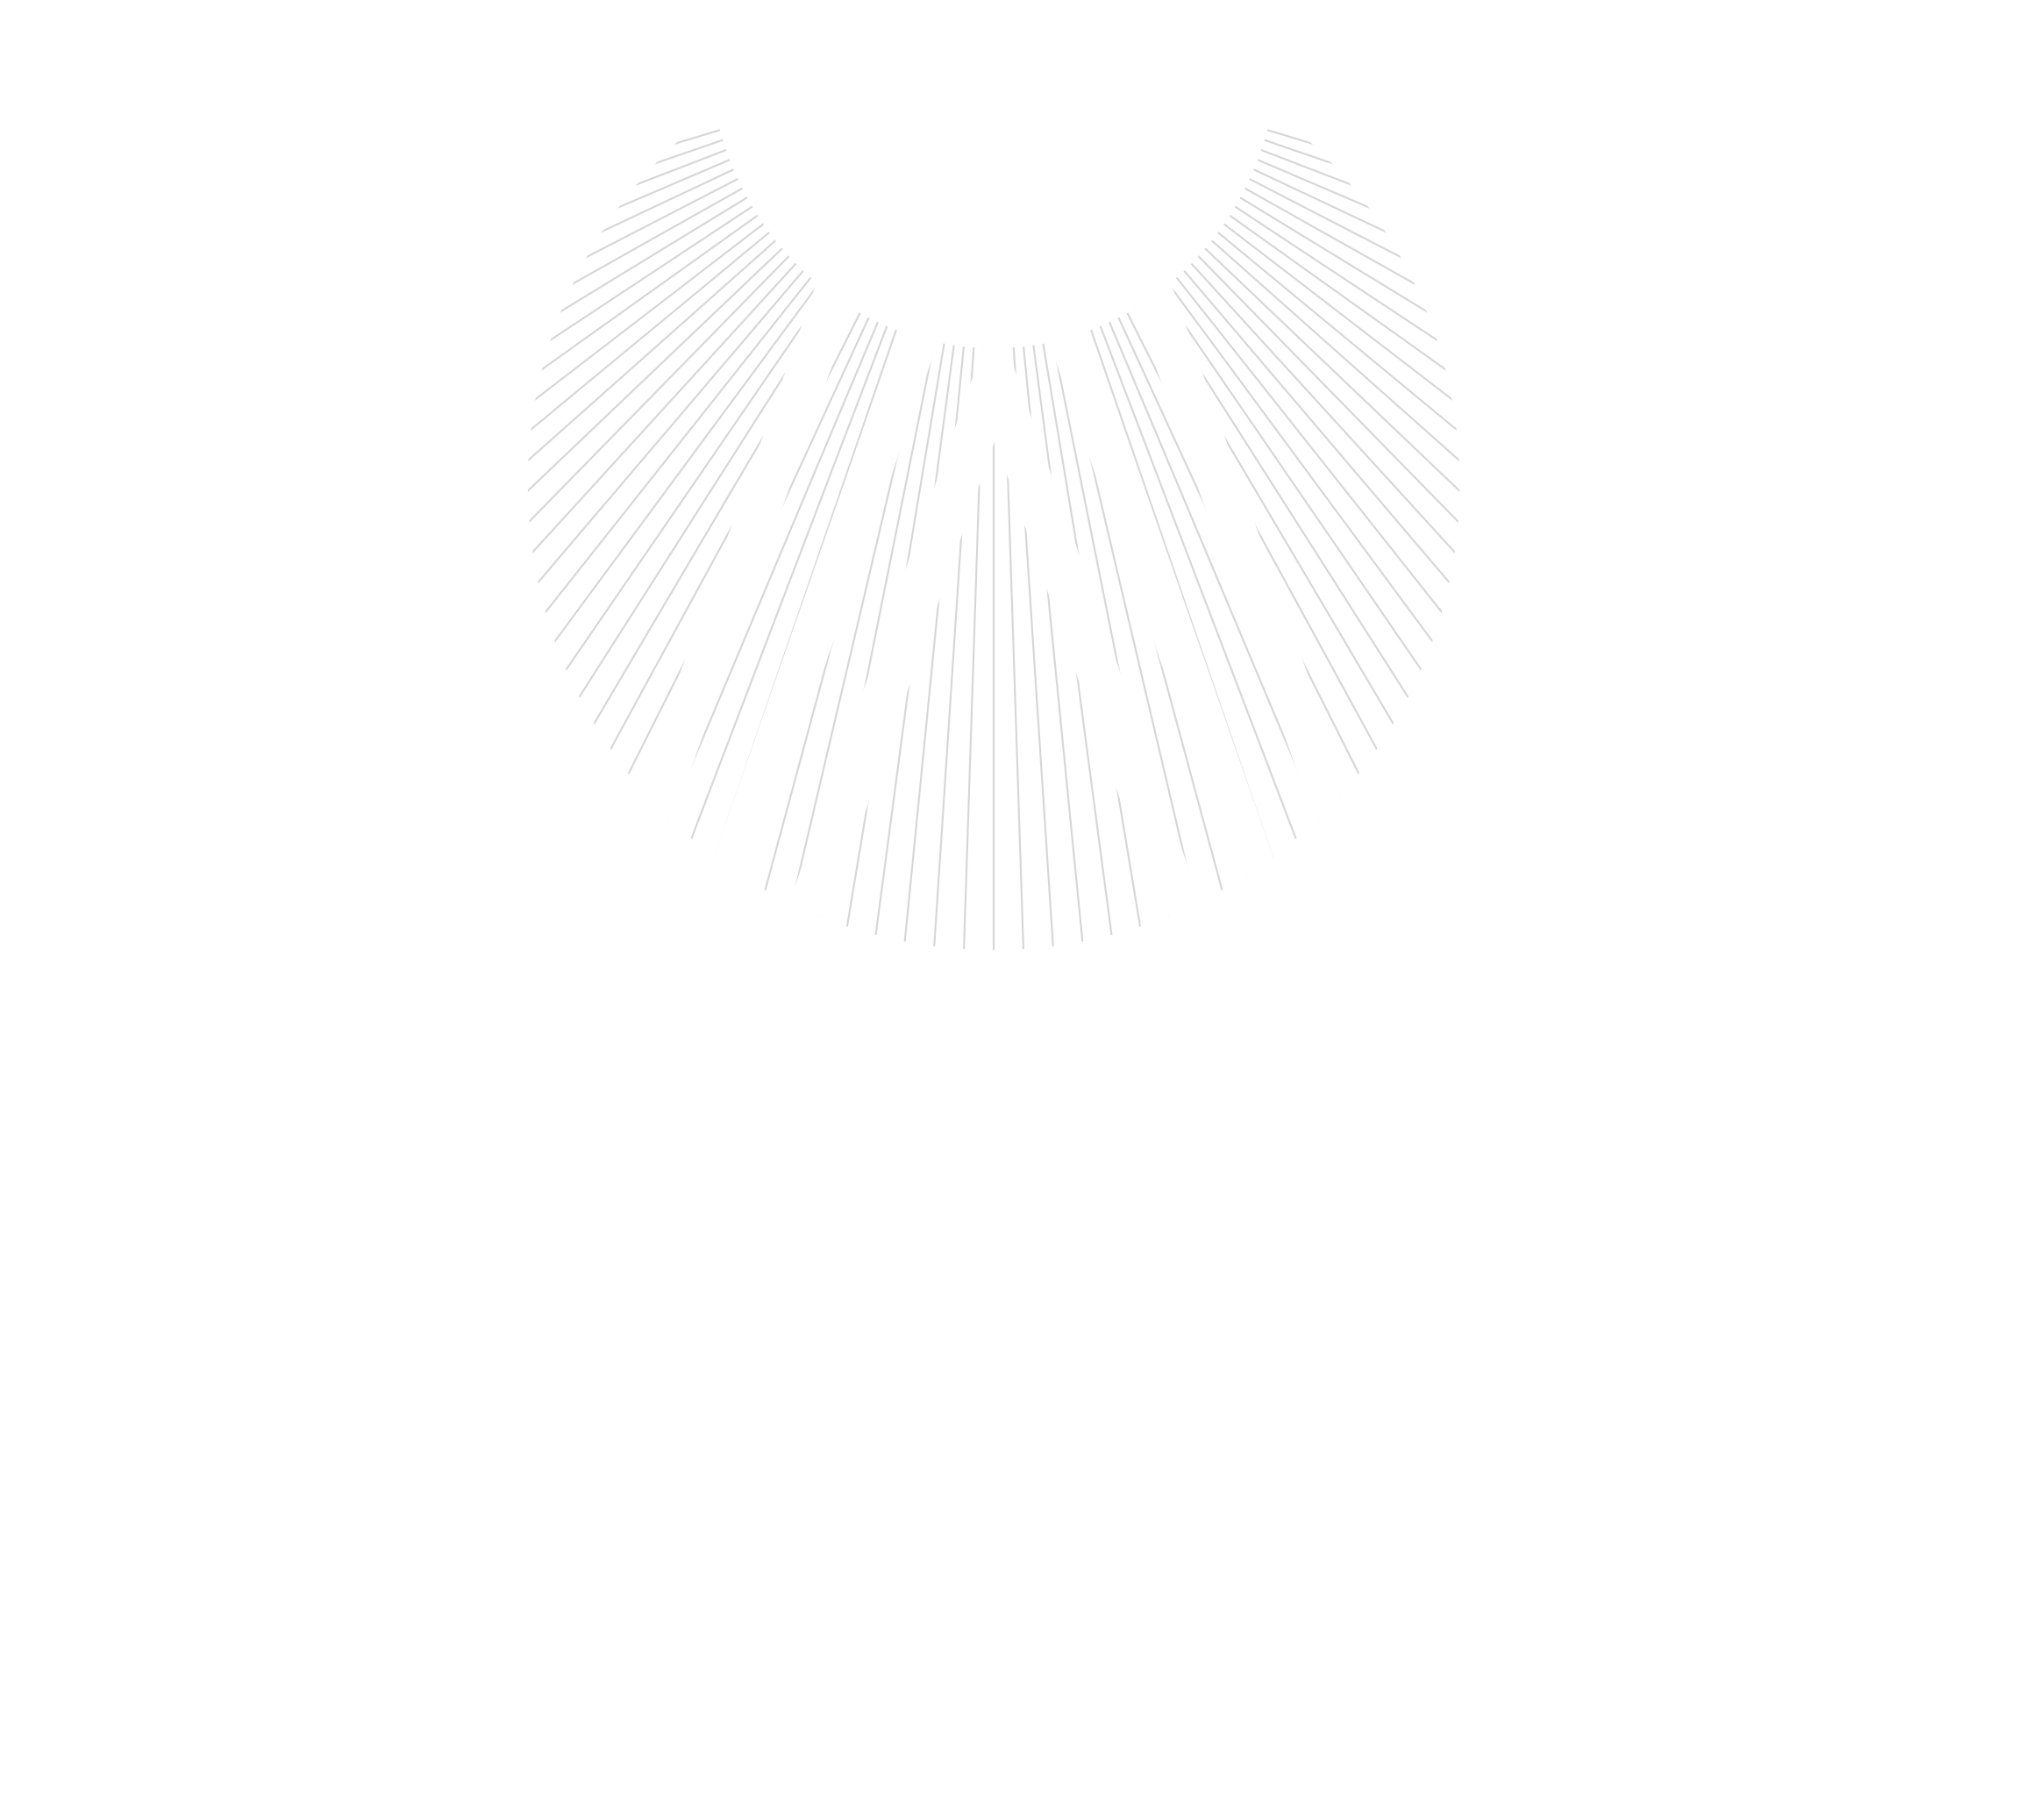 Sman Group